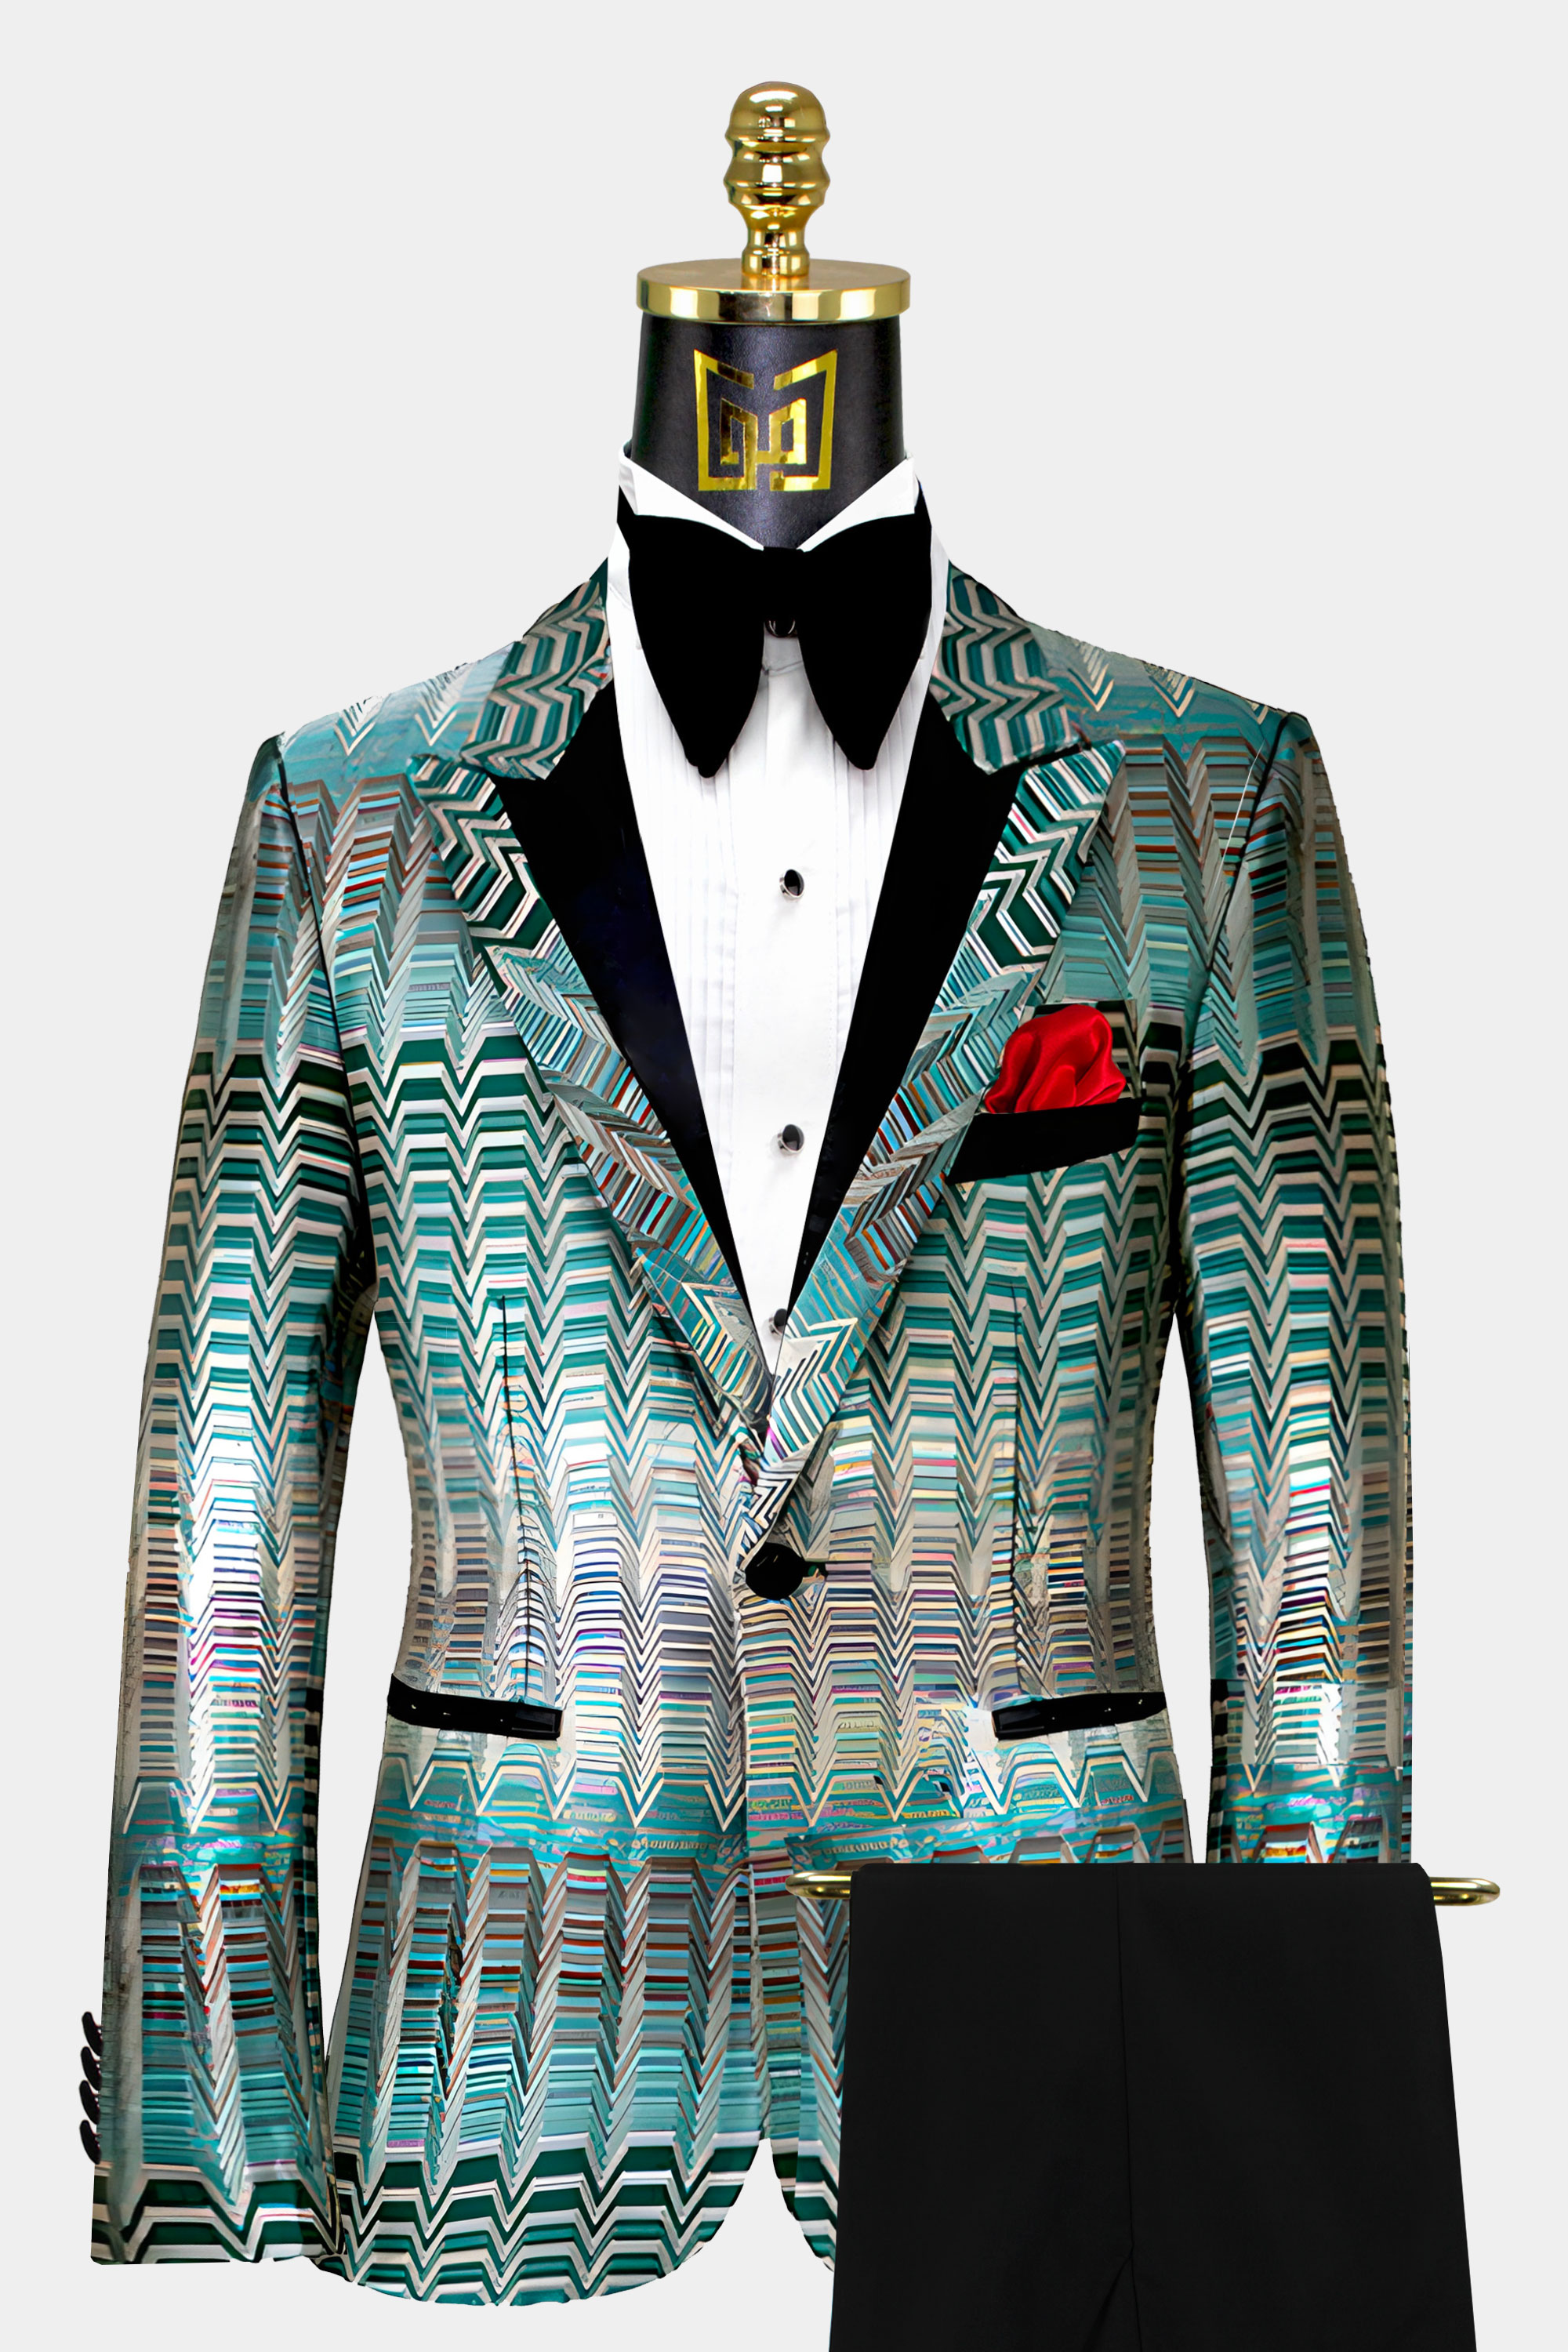 Turquoise-Blue-Tuxedo-Groom-Wedding-Prom-Suit-from-Gentlemansguru.com